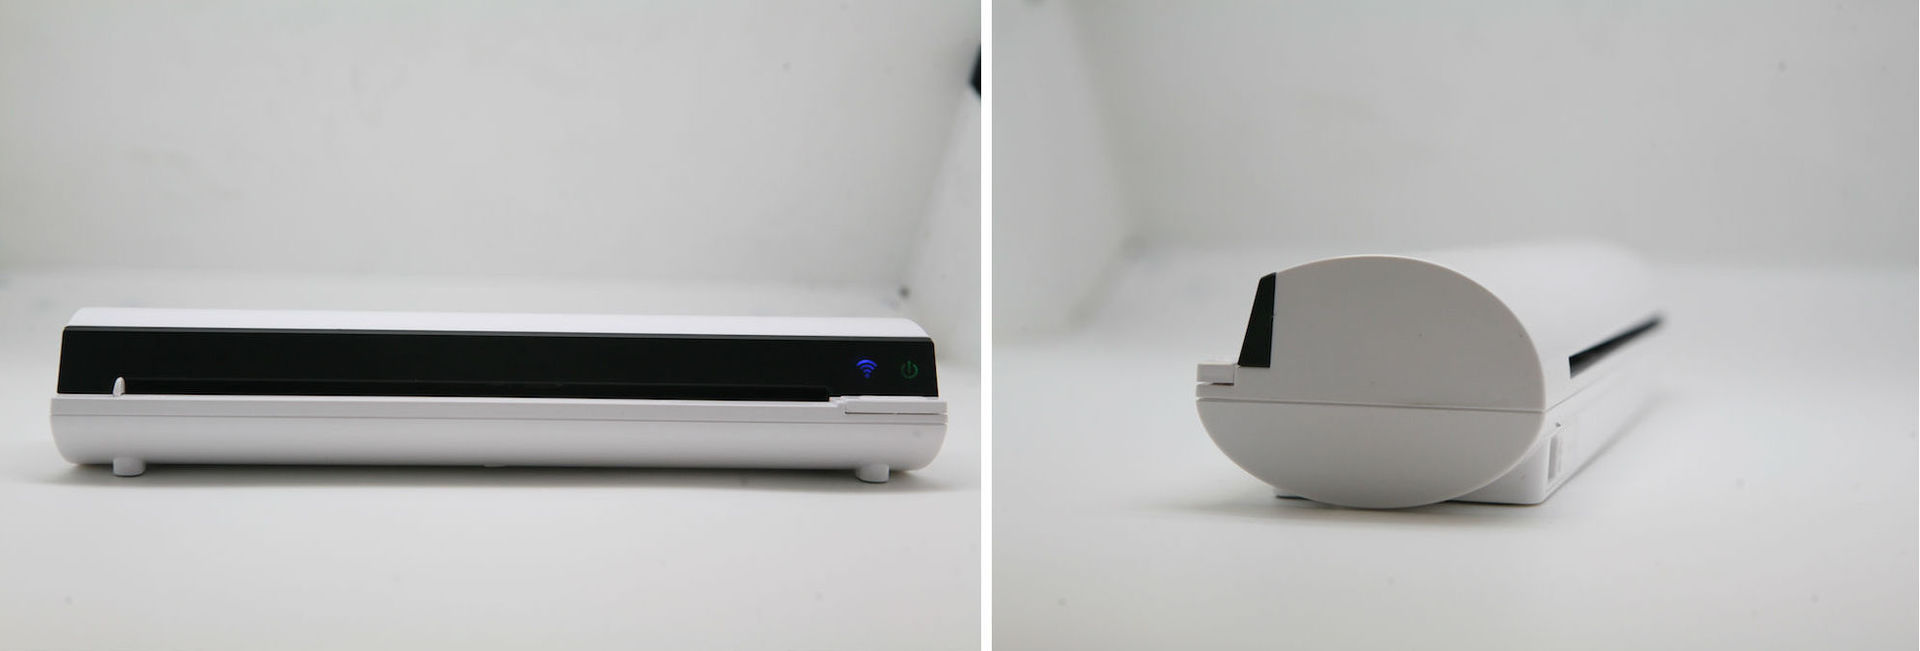 IScan Air — беспроводной портативный Wi-Fi сканер: обзор, характеристики, принцип работы - 3